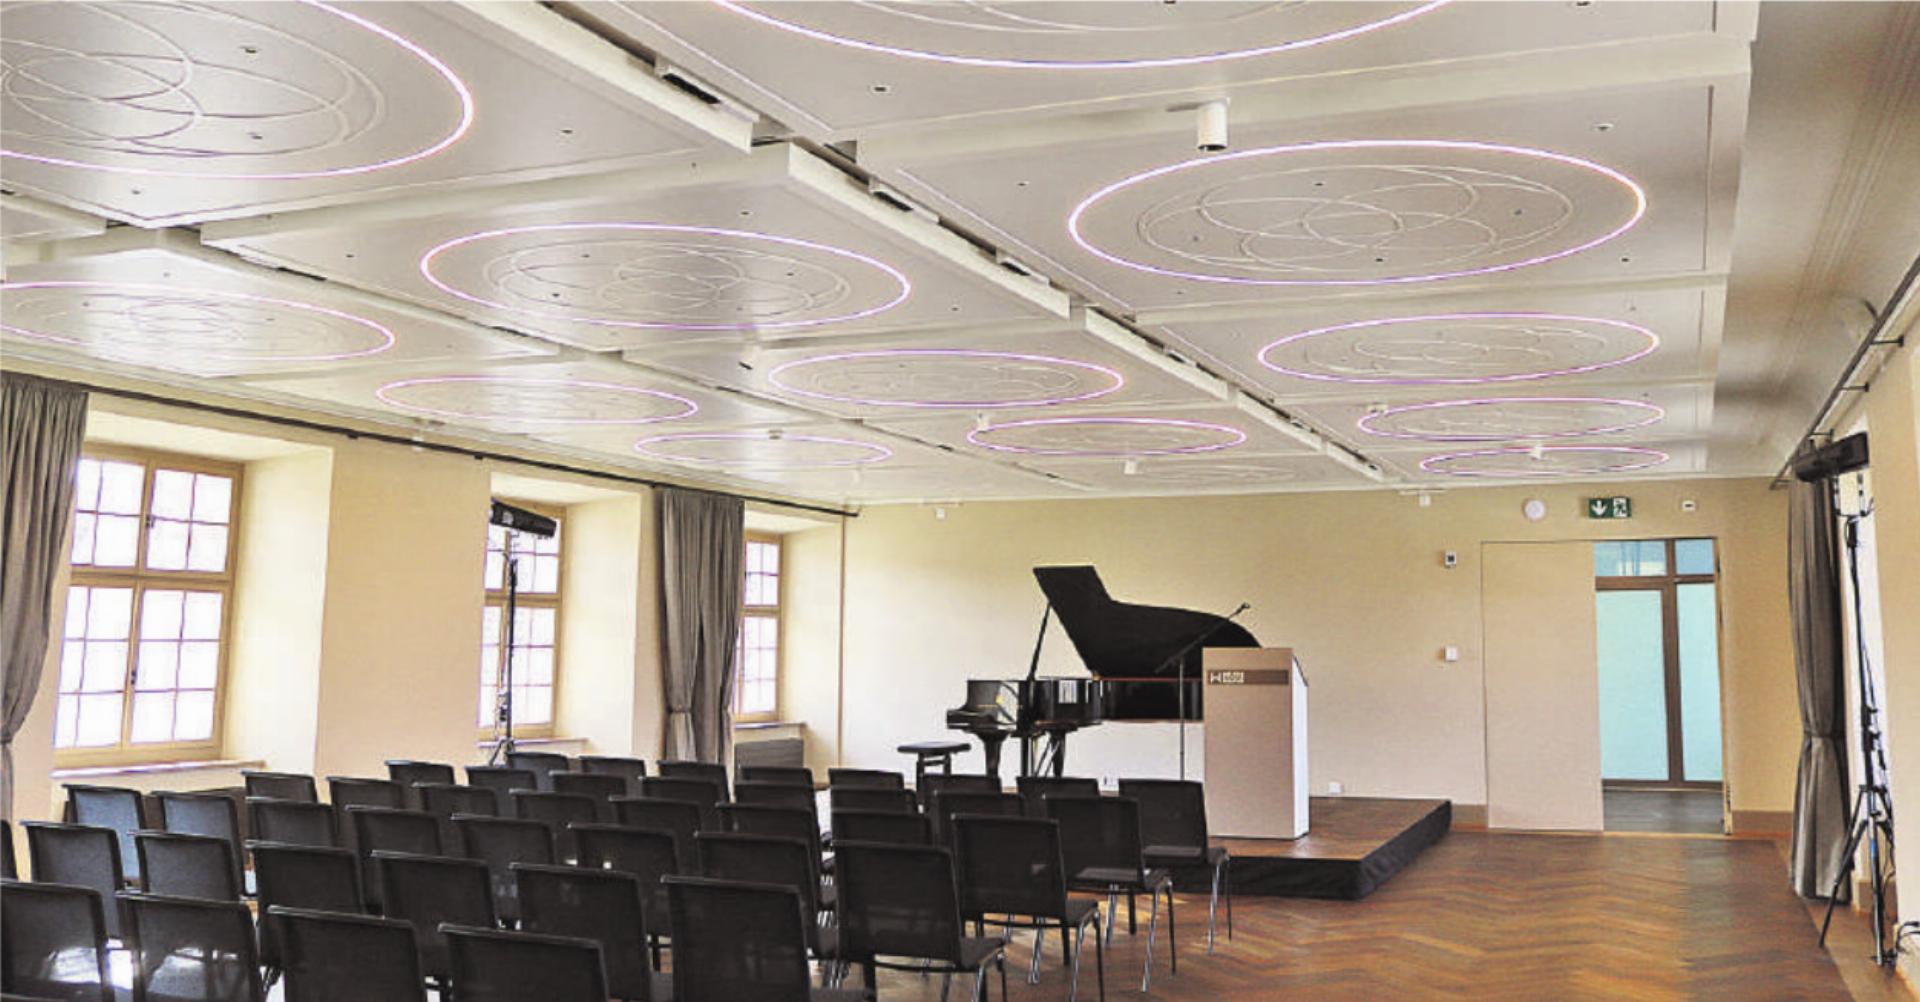 Fotos: ci Der Singisen Saal mit dem neuen Steinway Flügel eröffnet Perspektiven.